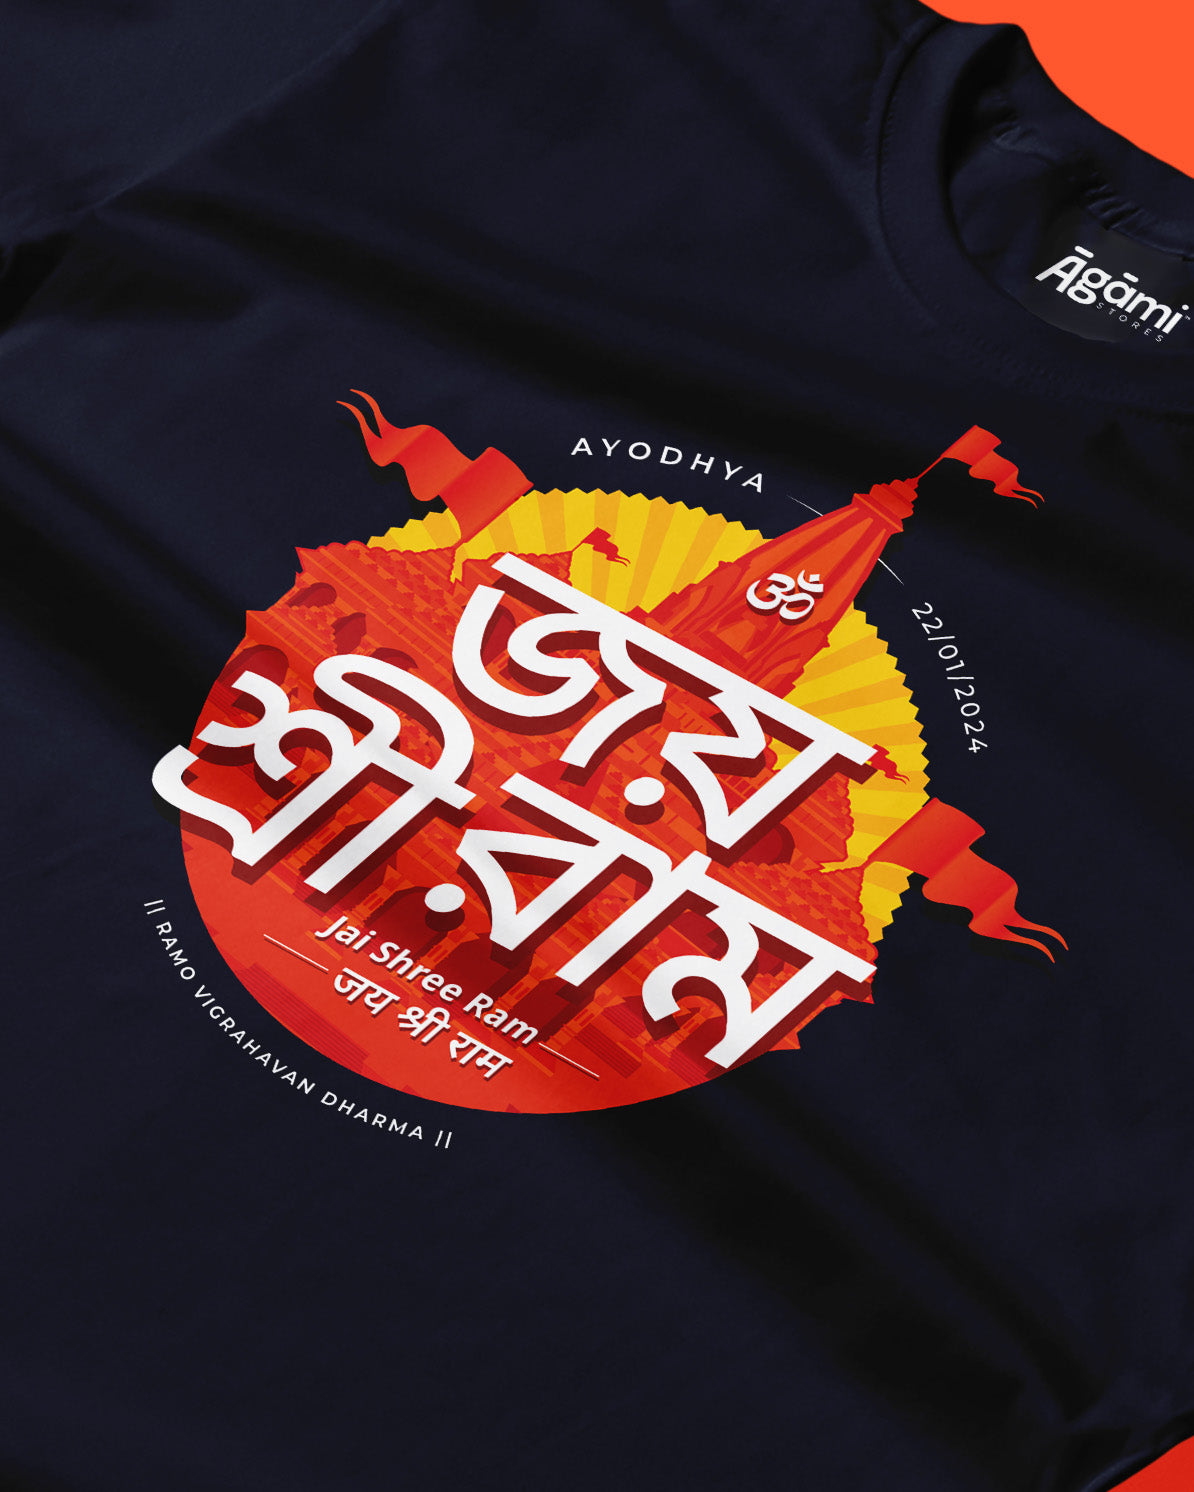 Jai Shree Ram T-shirt - Bangla | Navy Blue